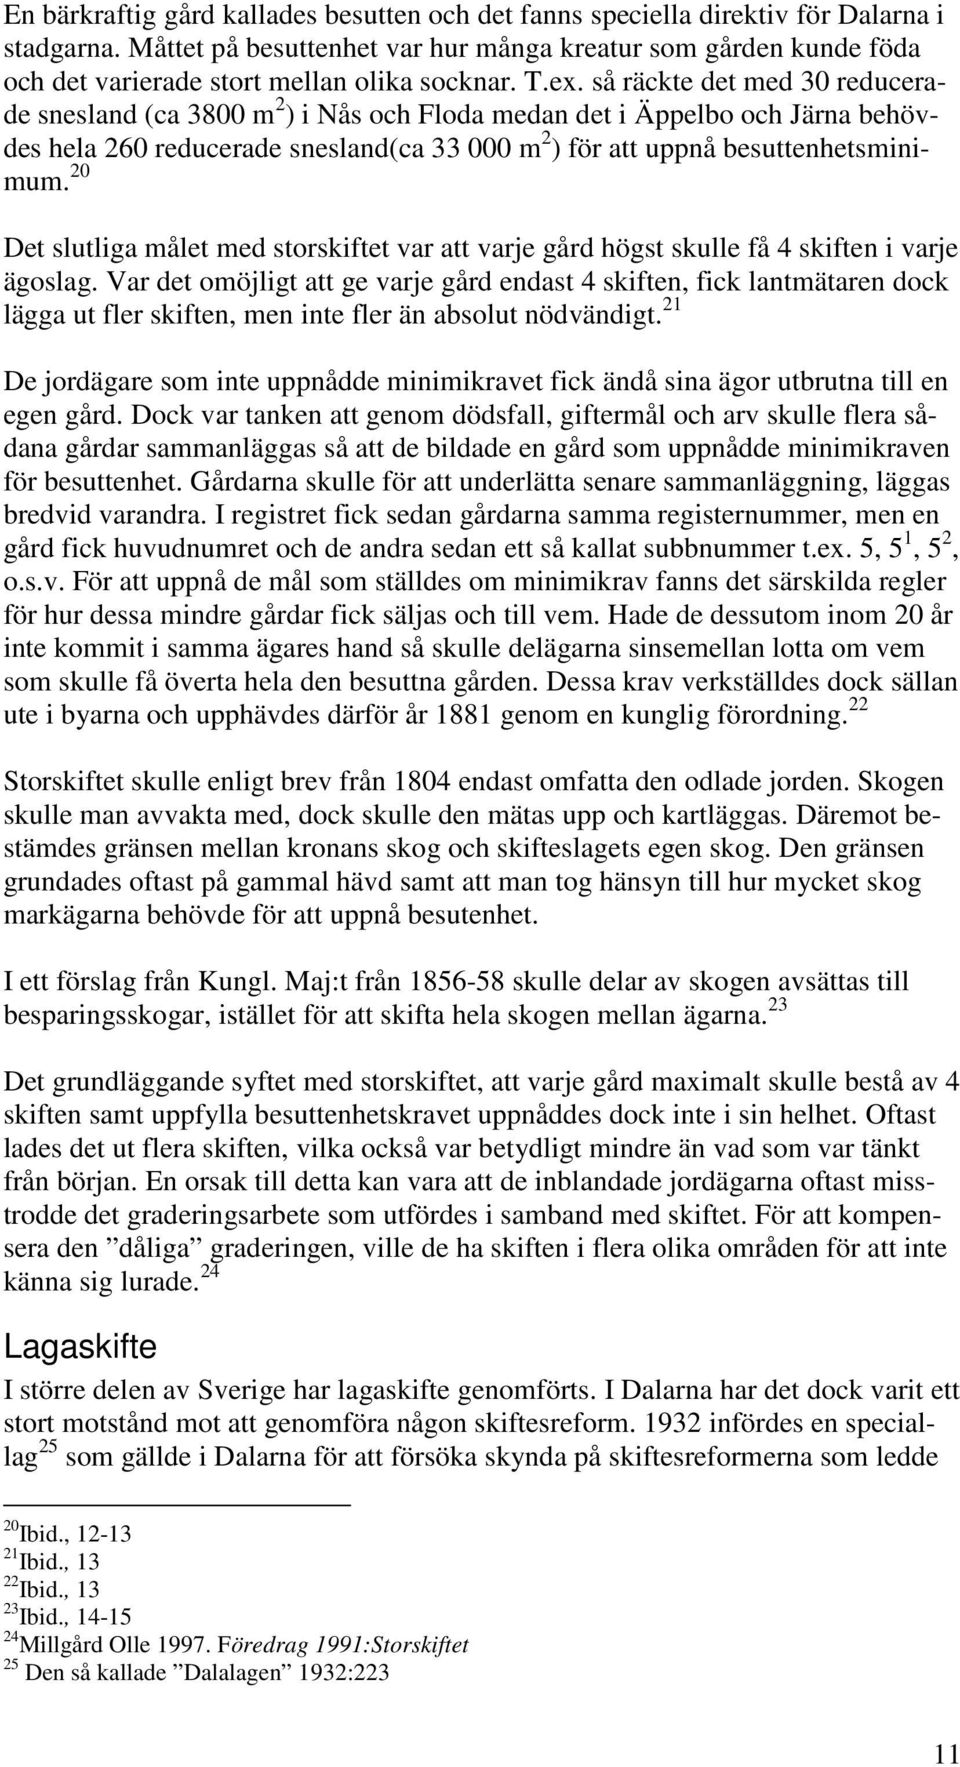 så räckte det med 30 reducerade snesland (ca 3800 m 2 ) i Nås och Floda medan det i Äppelbo och Järna behövdes hela 260 reducerade snesland(ca 33 000 m 2 ) för att uppnå besuttenhetsminimum.